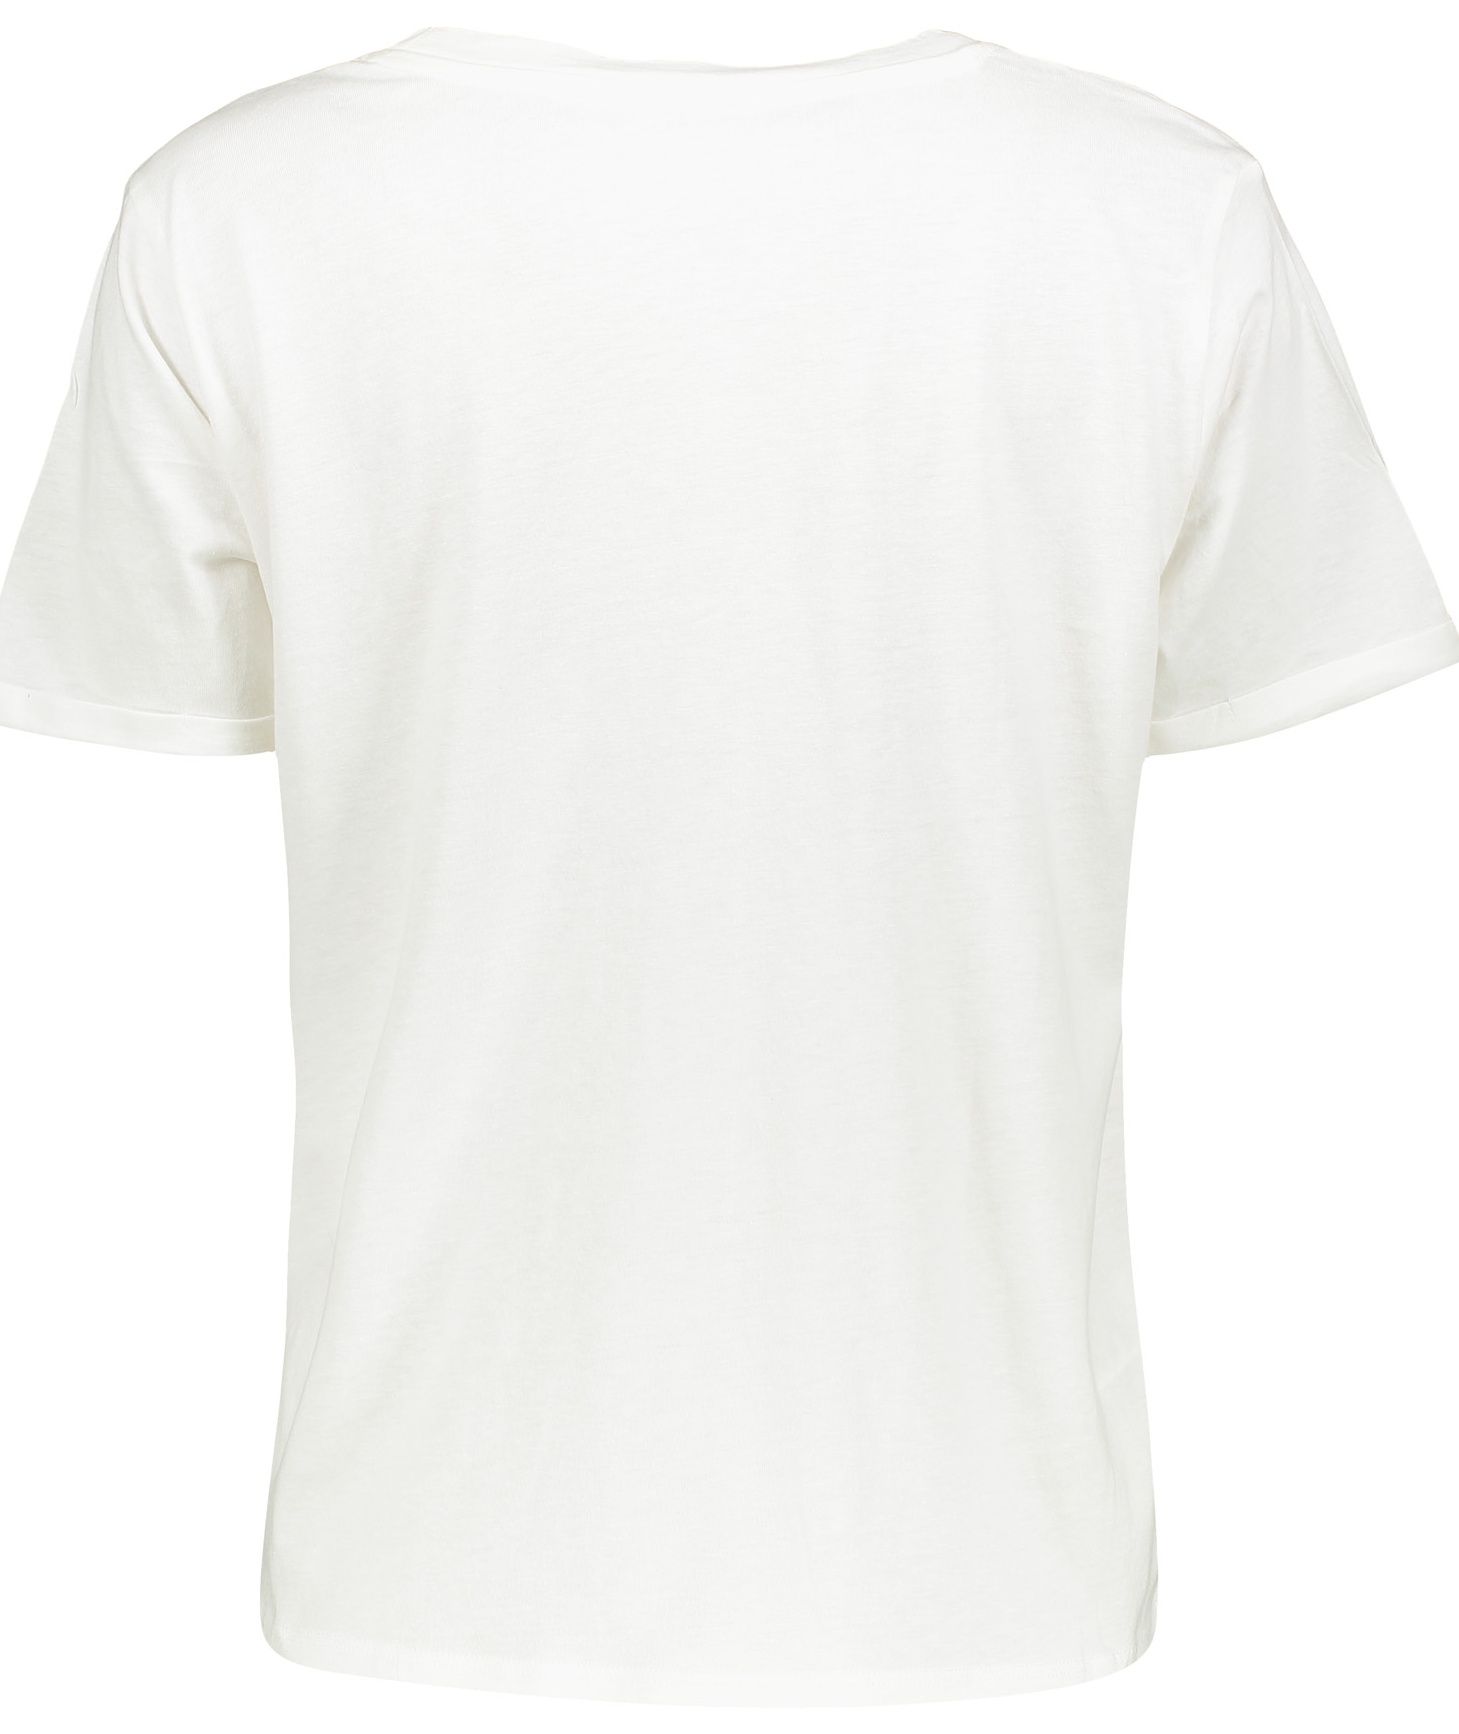 تی شرت یقه گرد زنانه - مانگو - سفيد - 4